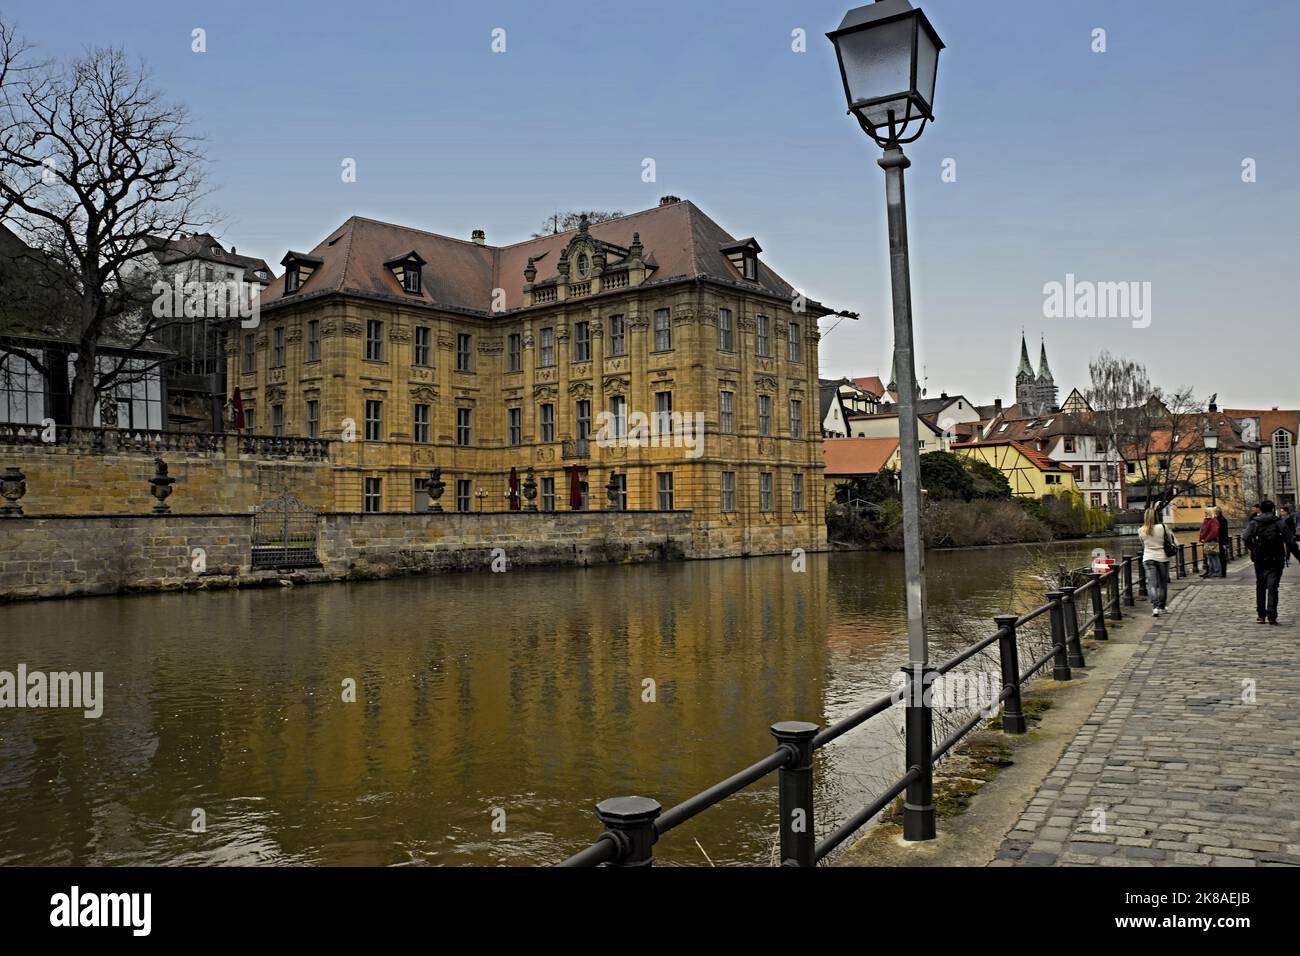 Aufnahme vom gegenüberliegenden Ufer mit Blick in Richtung Altstadt Stock Photo